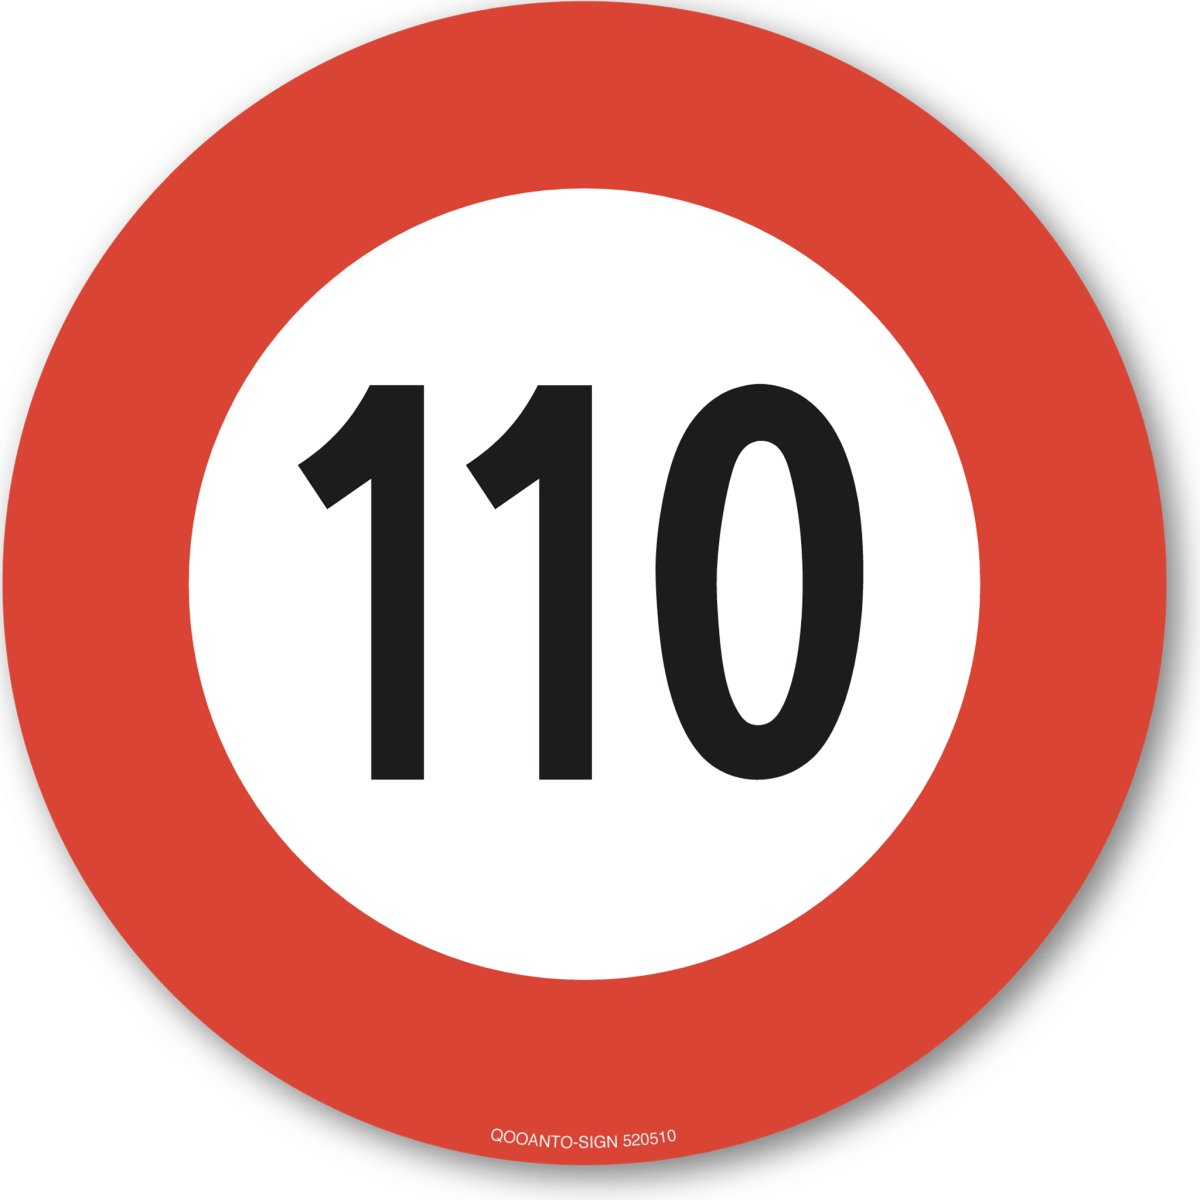 110 Höchstgeschwindigkeit Verkehrsschild oder Aufkleber aus Alu-Verbund oder Selbstklebefolie mit UV-Schutz - QOOANTO-SIGN